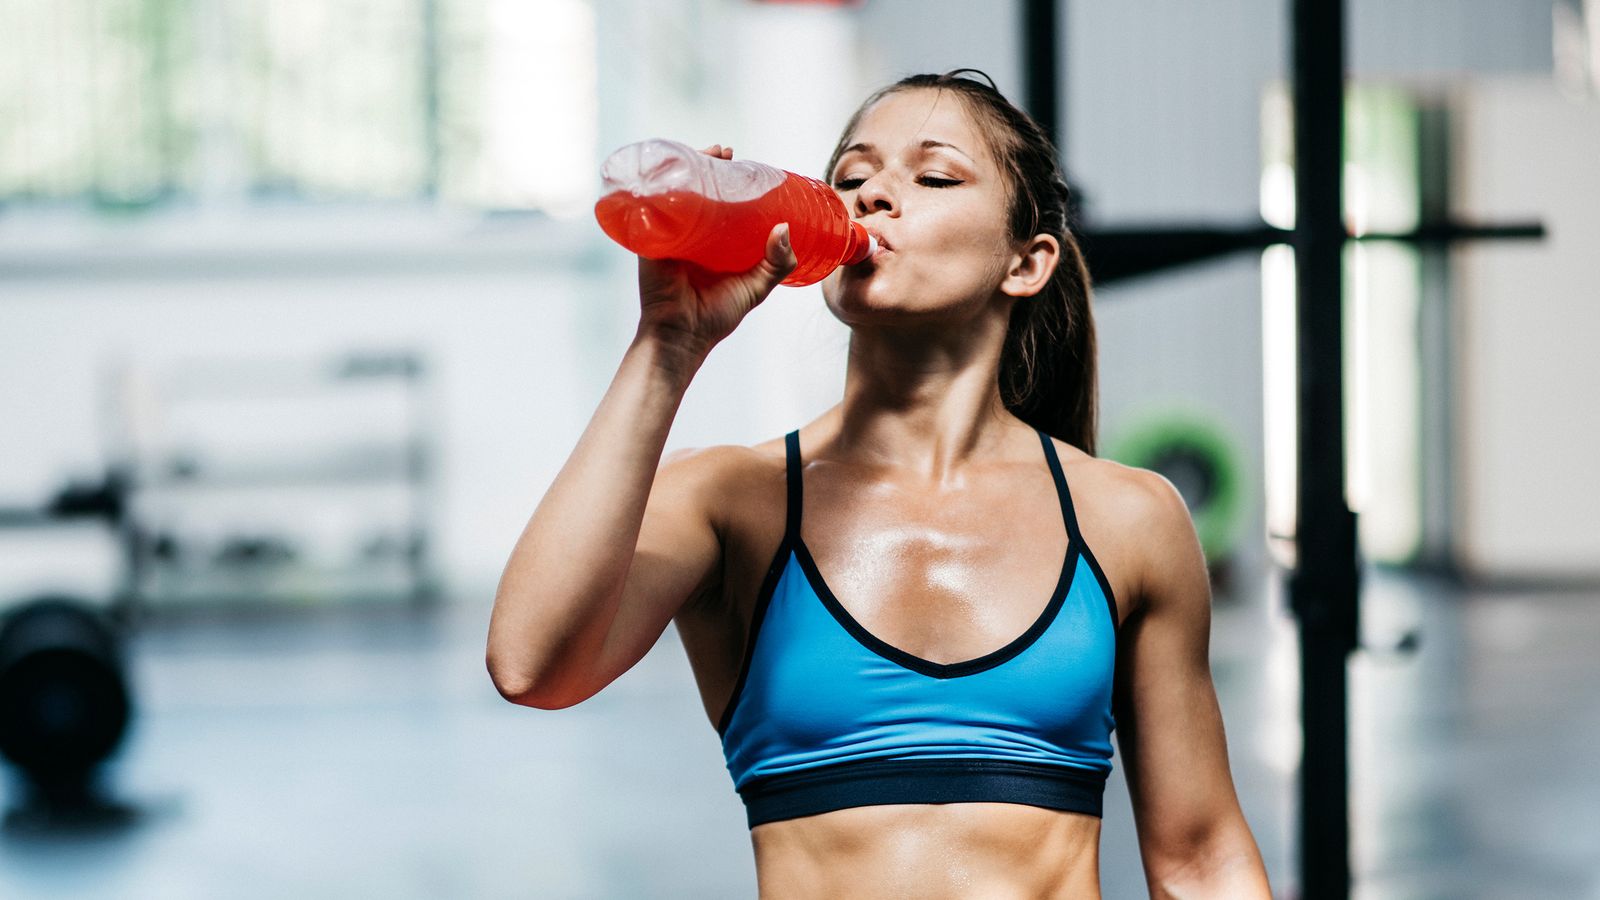 Junge sportliche Frau trinkt nach dem Training im Fitnessstudio einen Softdrink aus einer Plastikflasche